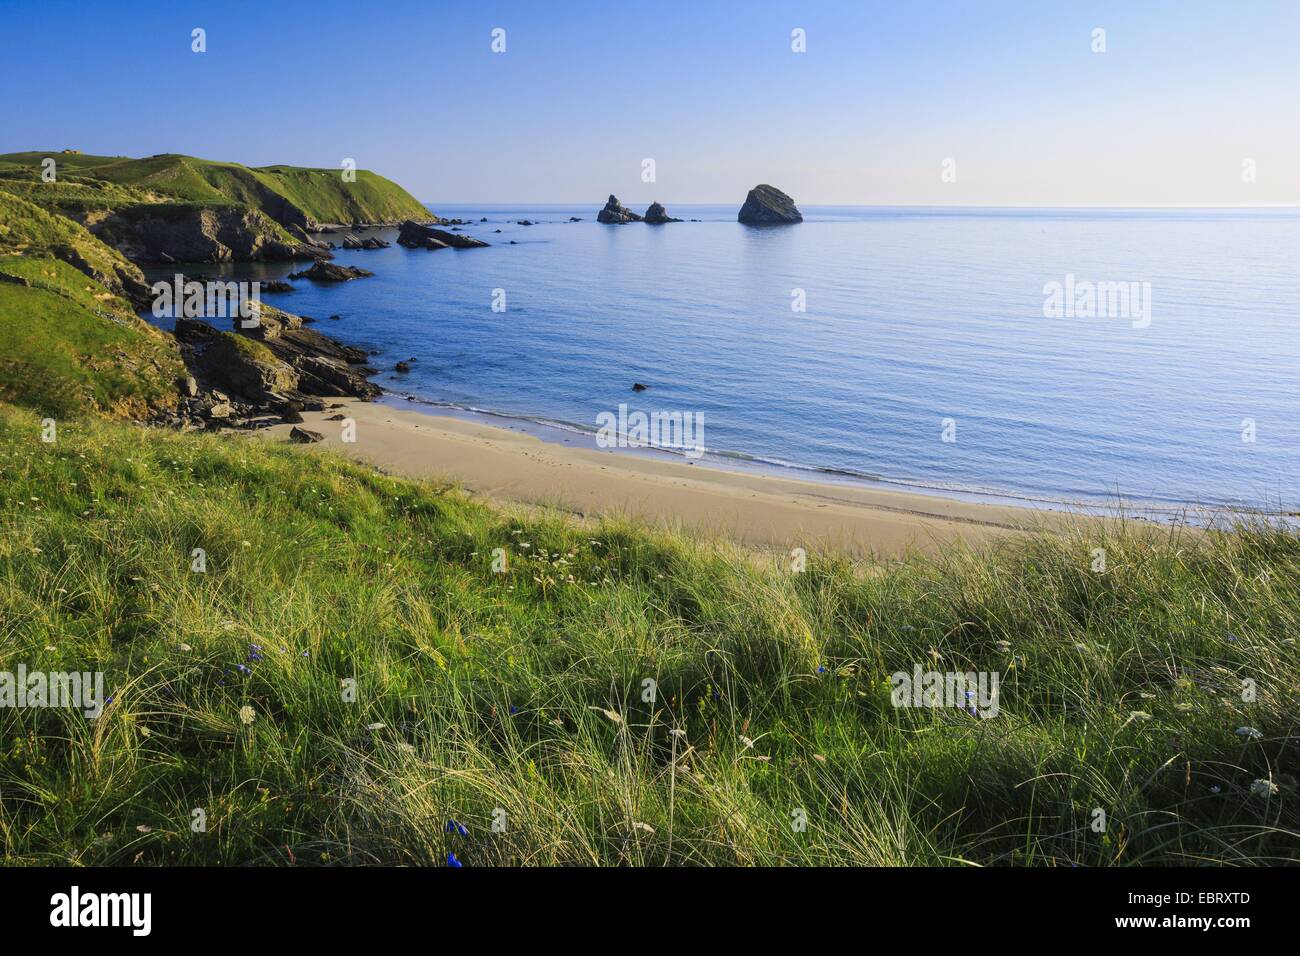 Spiaggia di sabbia della baia di Balnakeil presso la costa settentrionale della Scozia, Regno Unito, Scozia, Sutherland Foto Stock